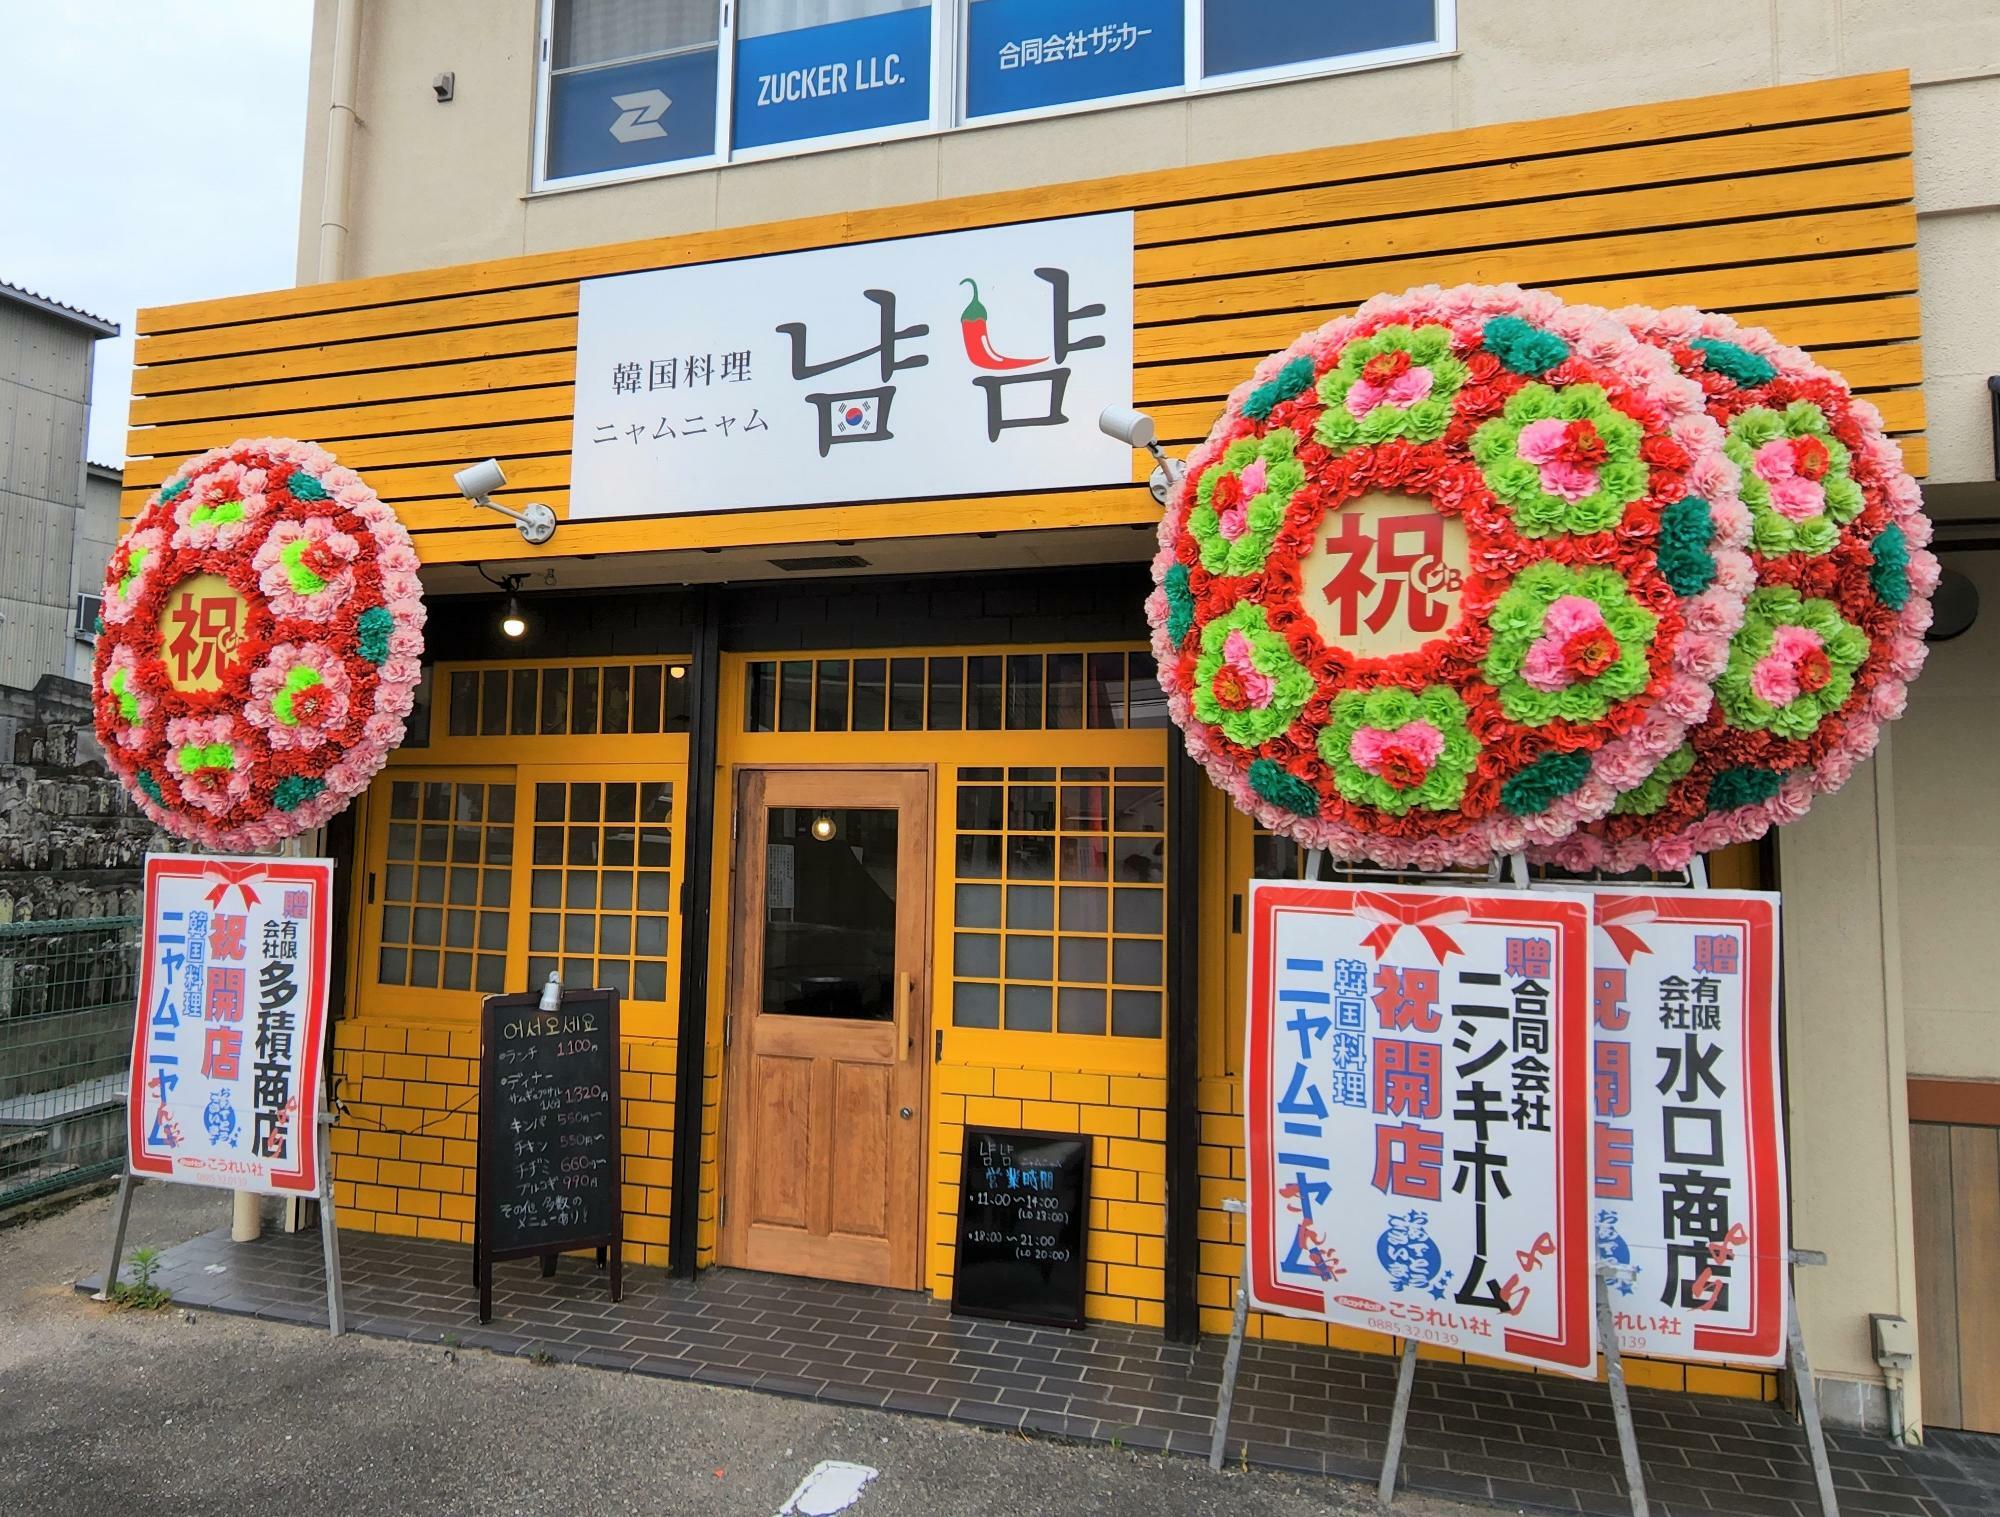 韓国料理「냠냠 ニャムニャム」店舗外観。